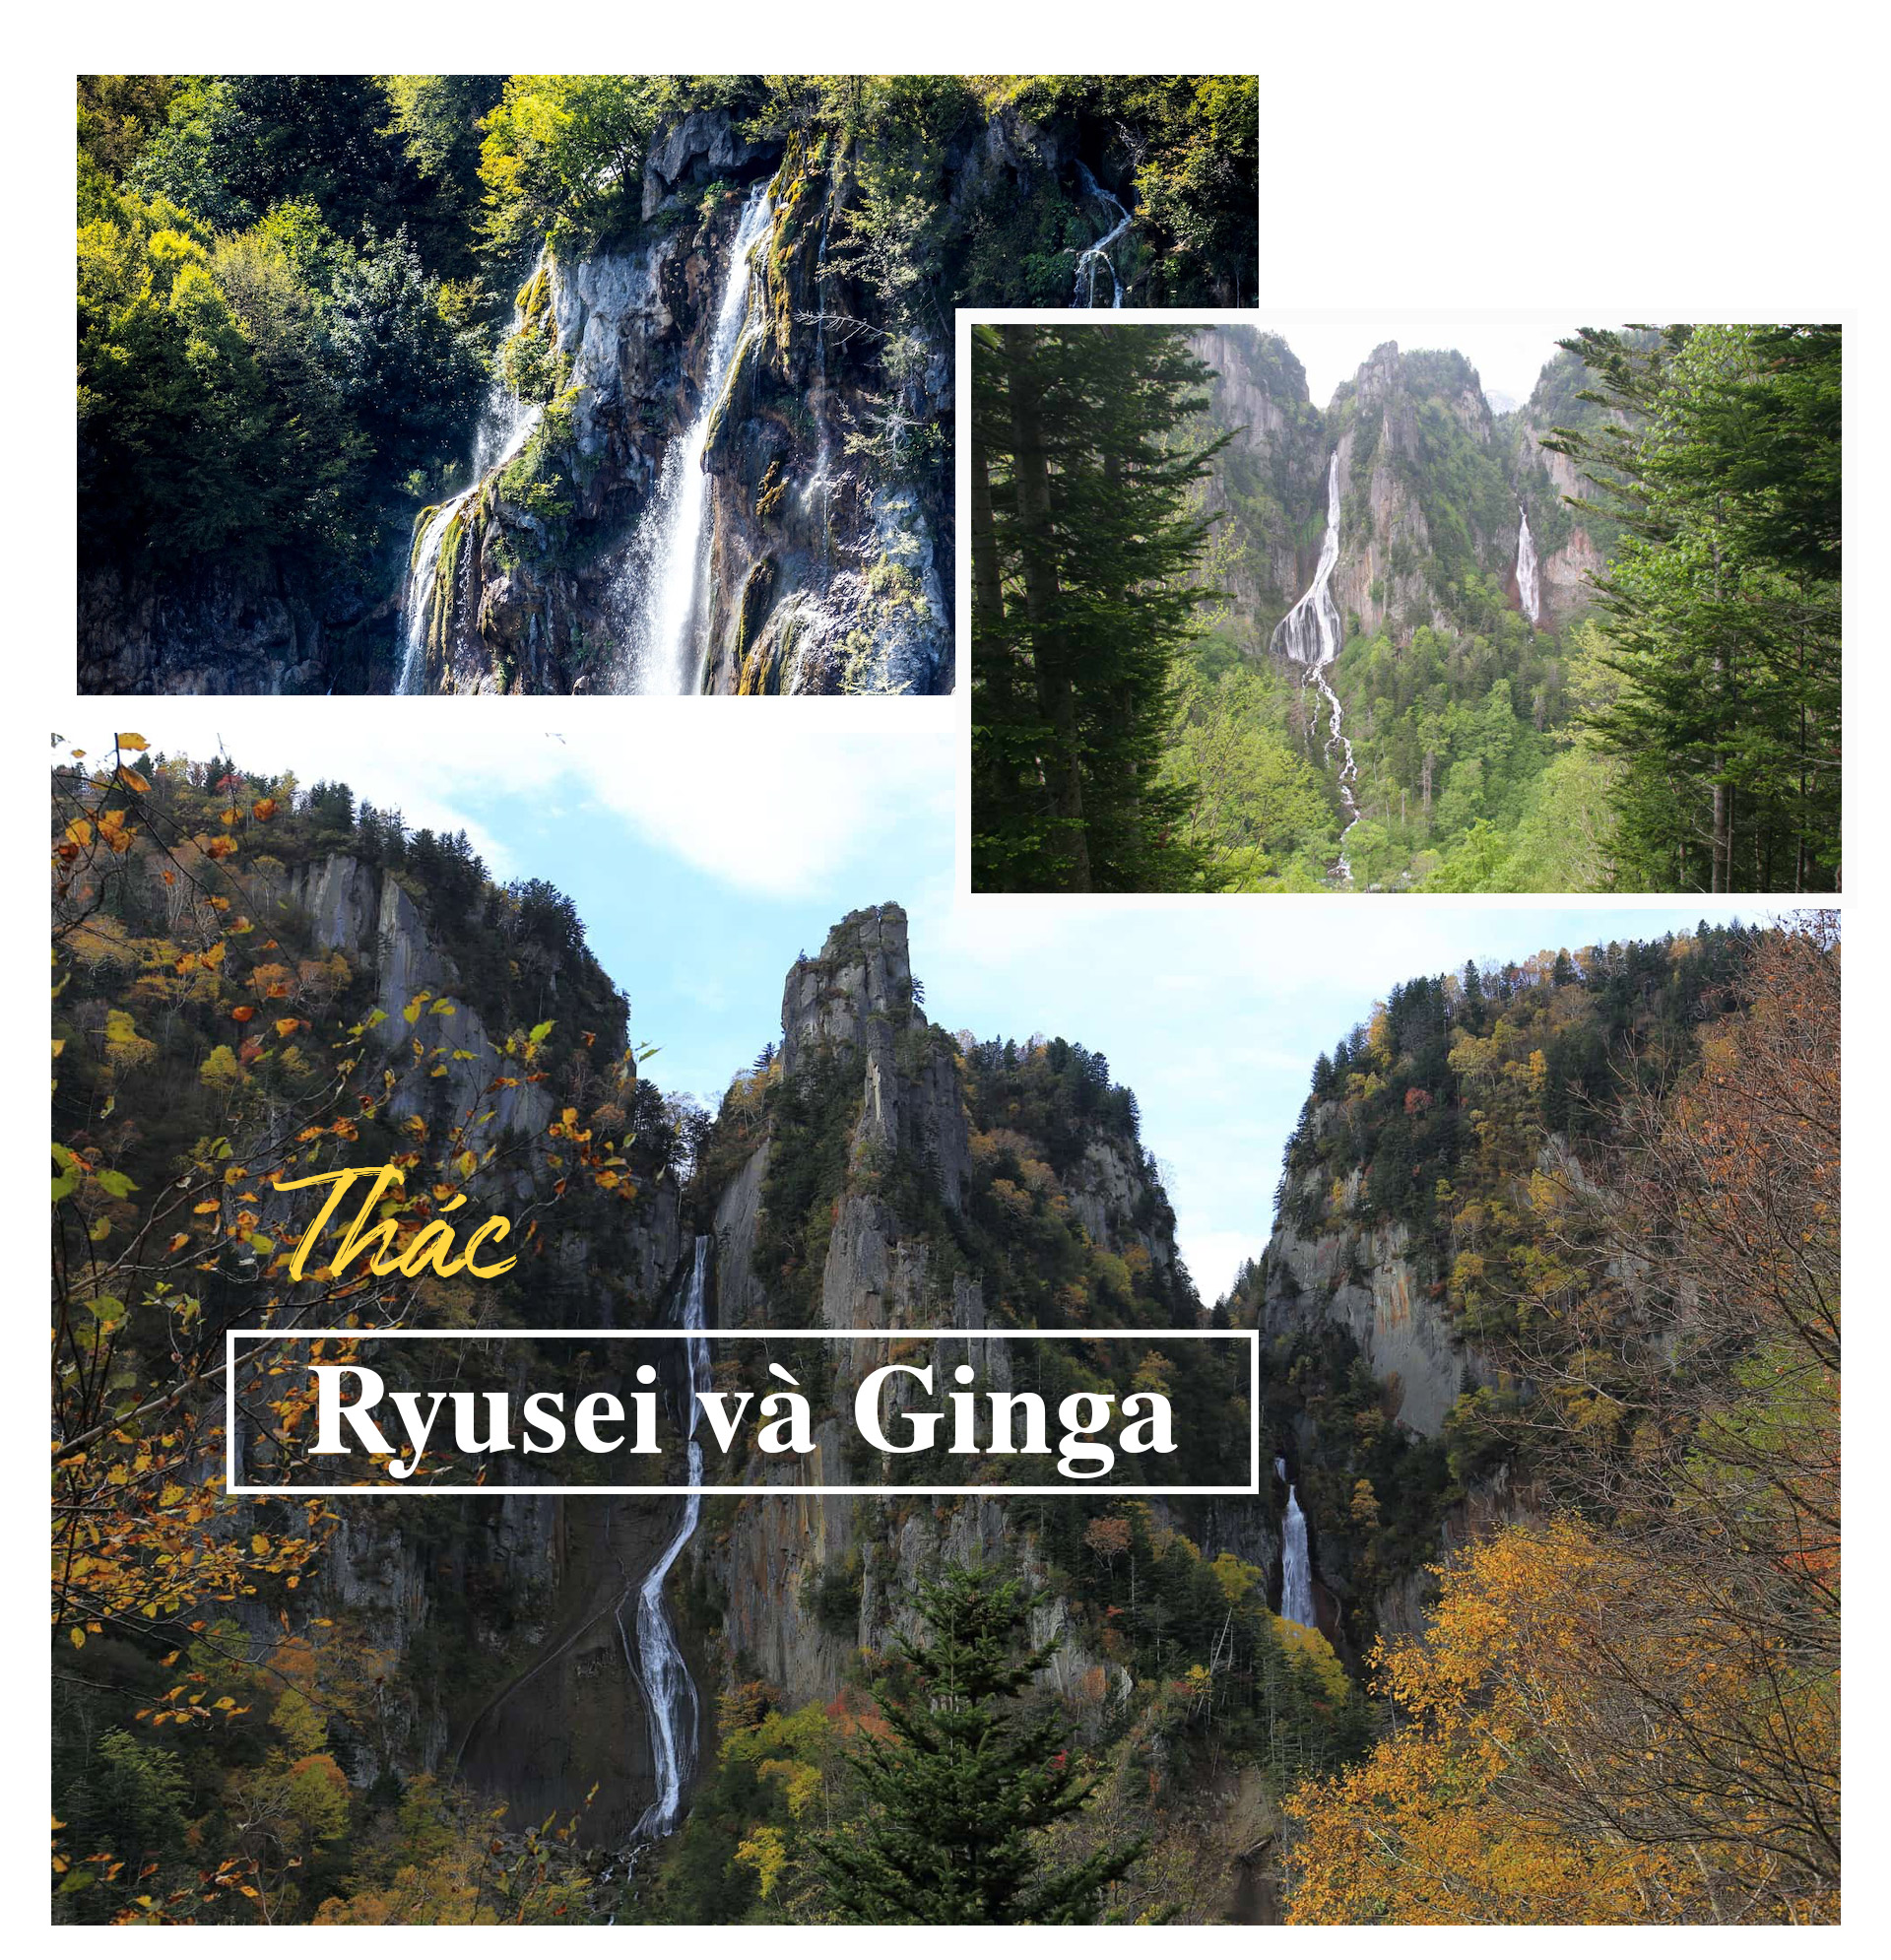 Chiêm ngưỡng những thác nước đẹp nhất Nhật Bản - 5